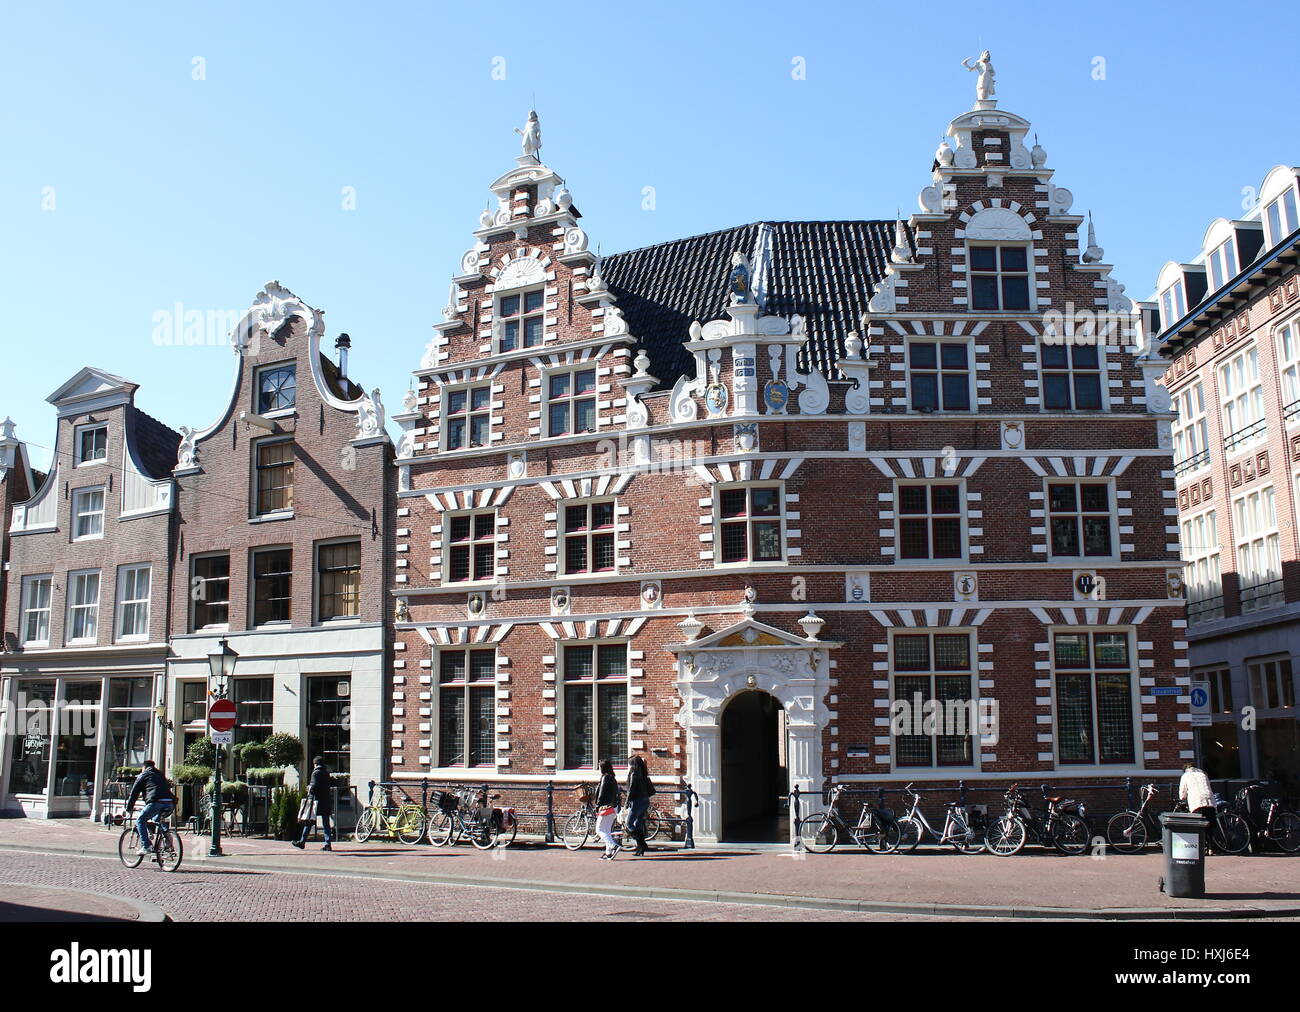 Monumentale Statenlogement (1622), ehemaliges Hotel & Rathaus (bis 1977) in Hoorn, Noord-Holland, Niederlande. Bekannt für doppelte Krähe trat Giebel Stockfoto